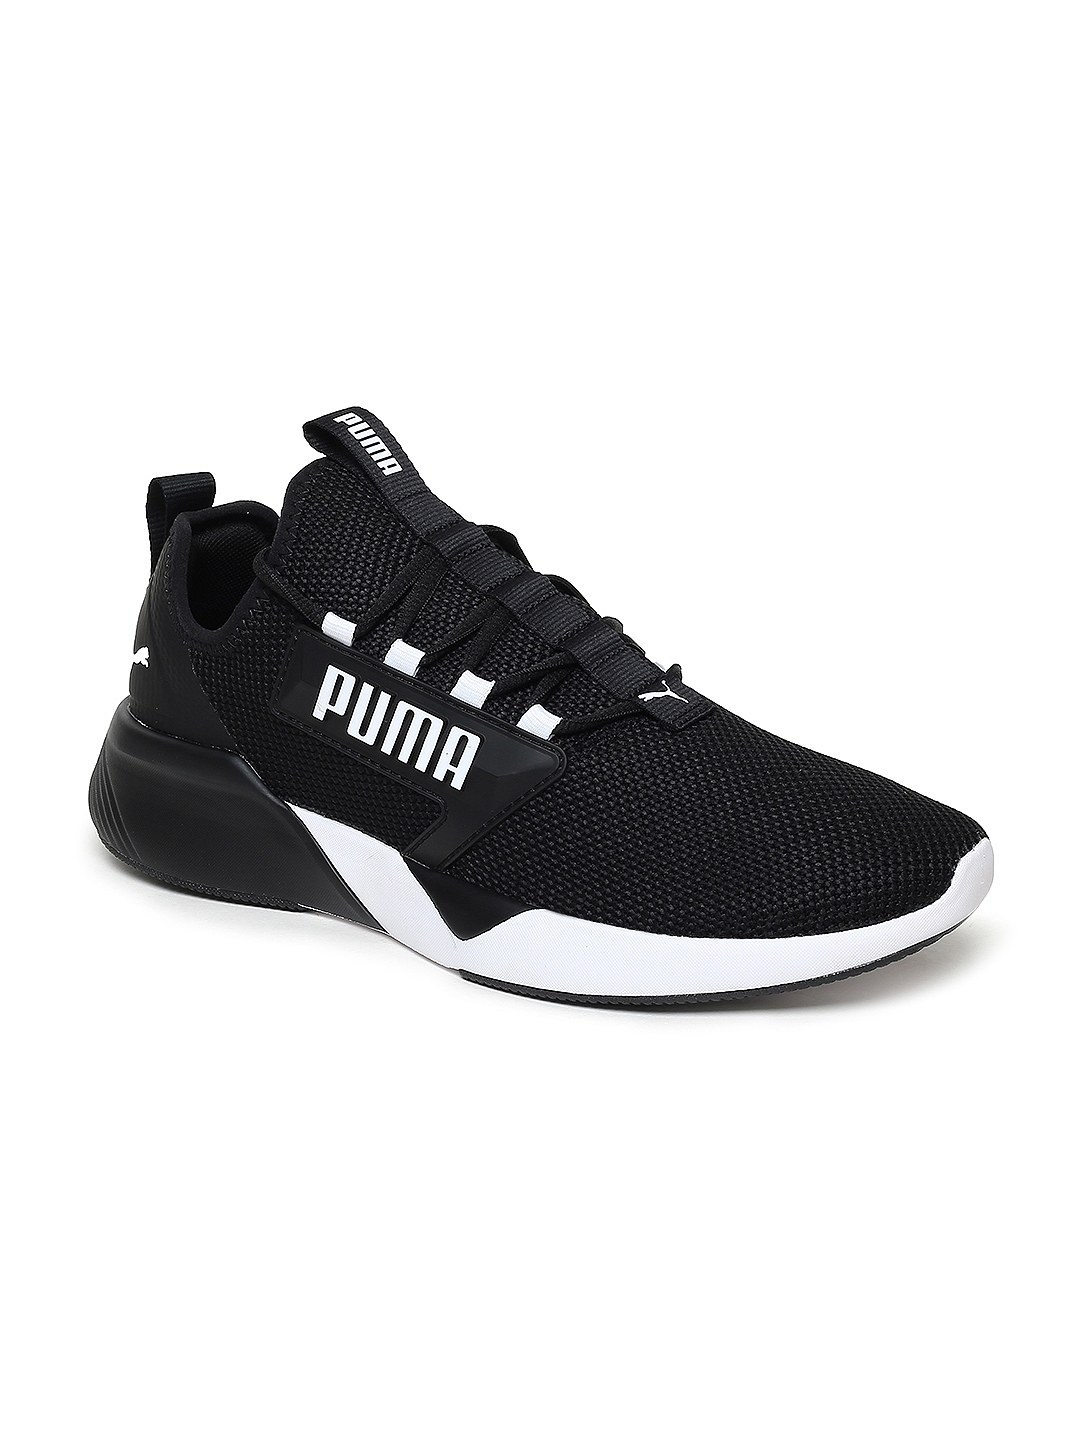 Puma Men Black Retaliate Running Shoes 